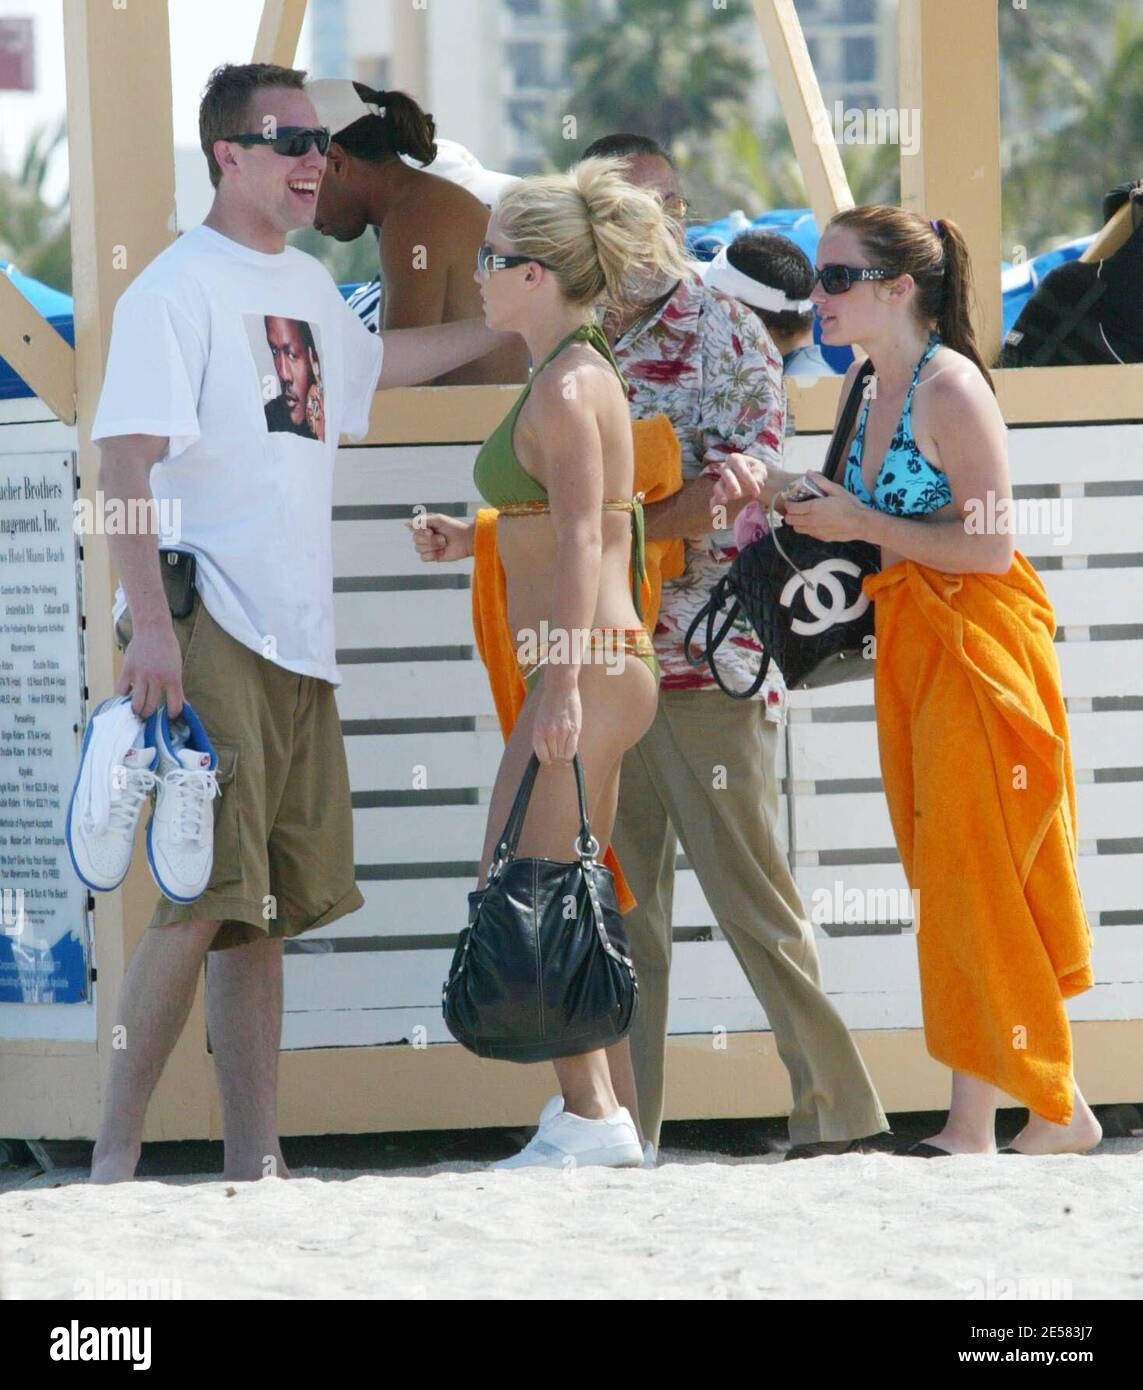 Exklusiv!! Playboy Playmate und Freundin von Hugh Hefner Kendra Wilkinson geht Jetsking und Parasailing mit einem freund am Samstagnachmittag auf Miami Beach, FL, 5/5/07. [[mab]] Stockfoto